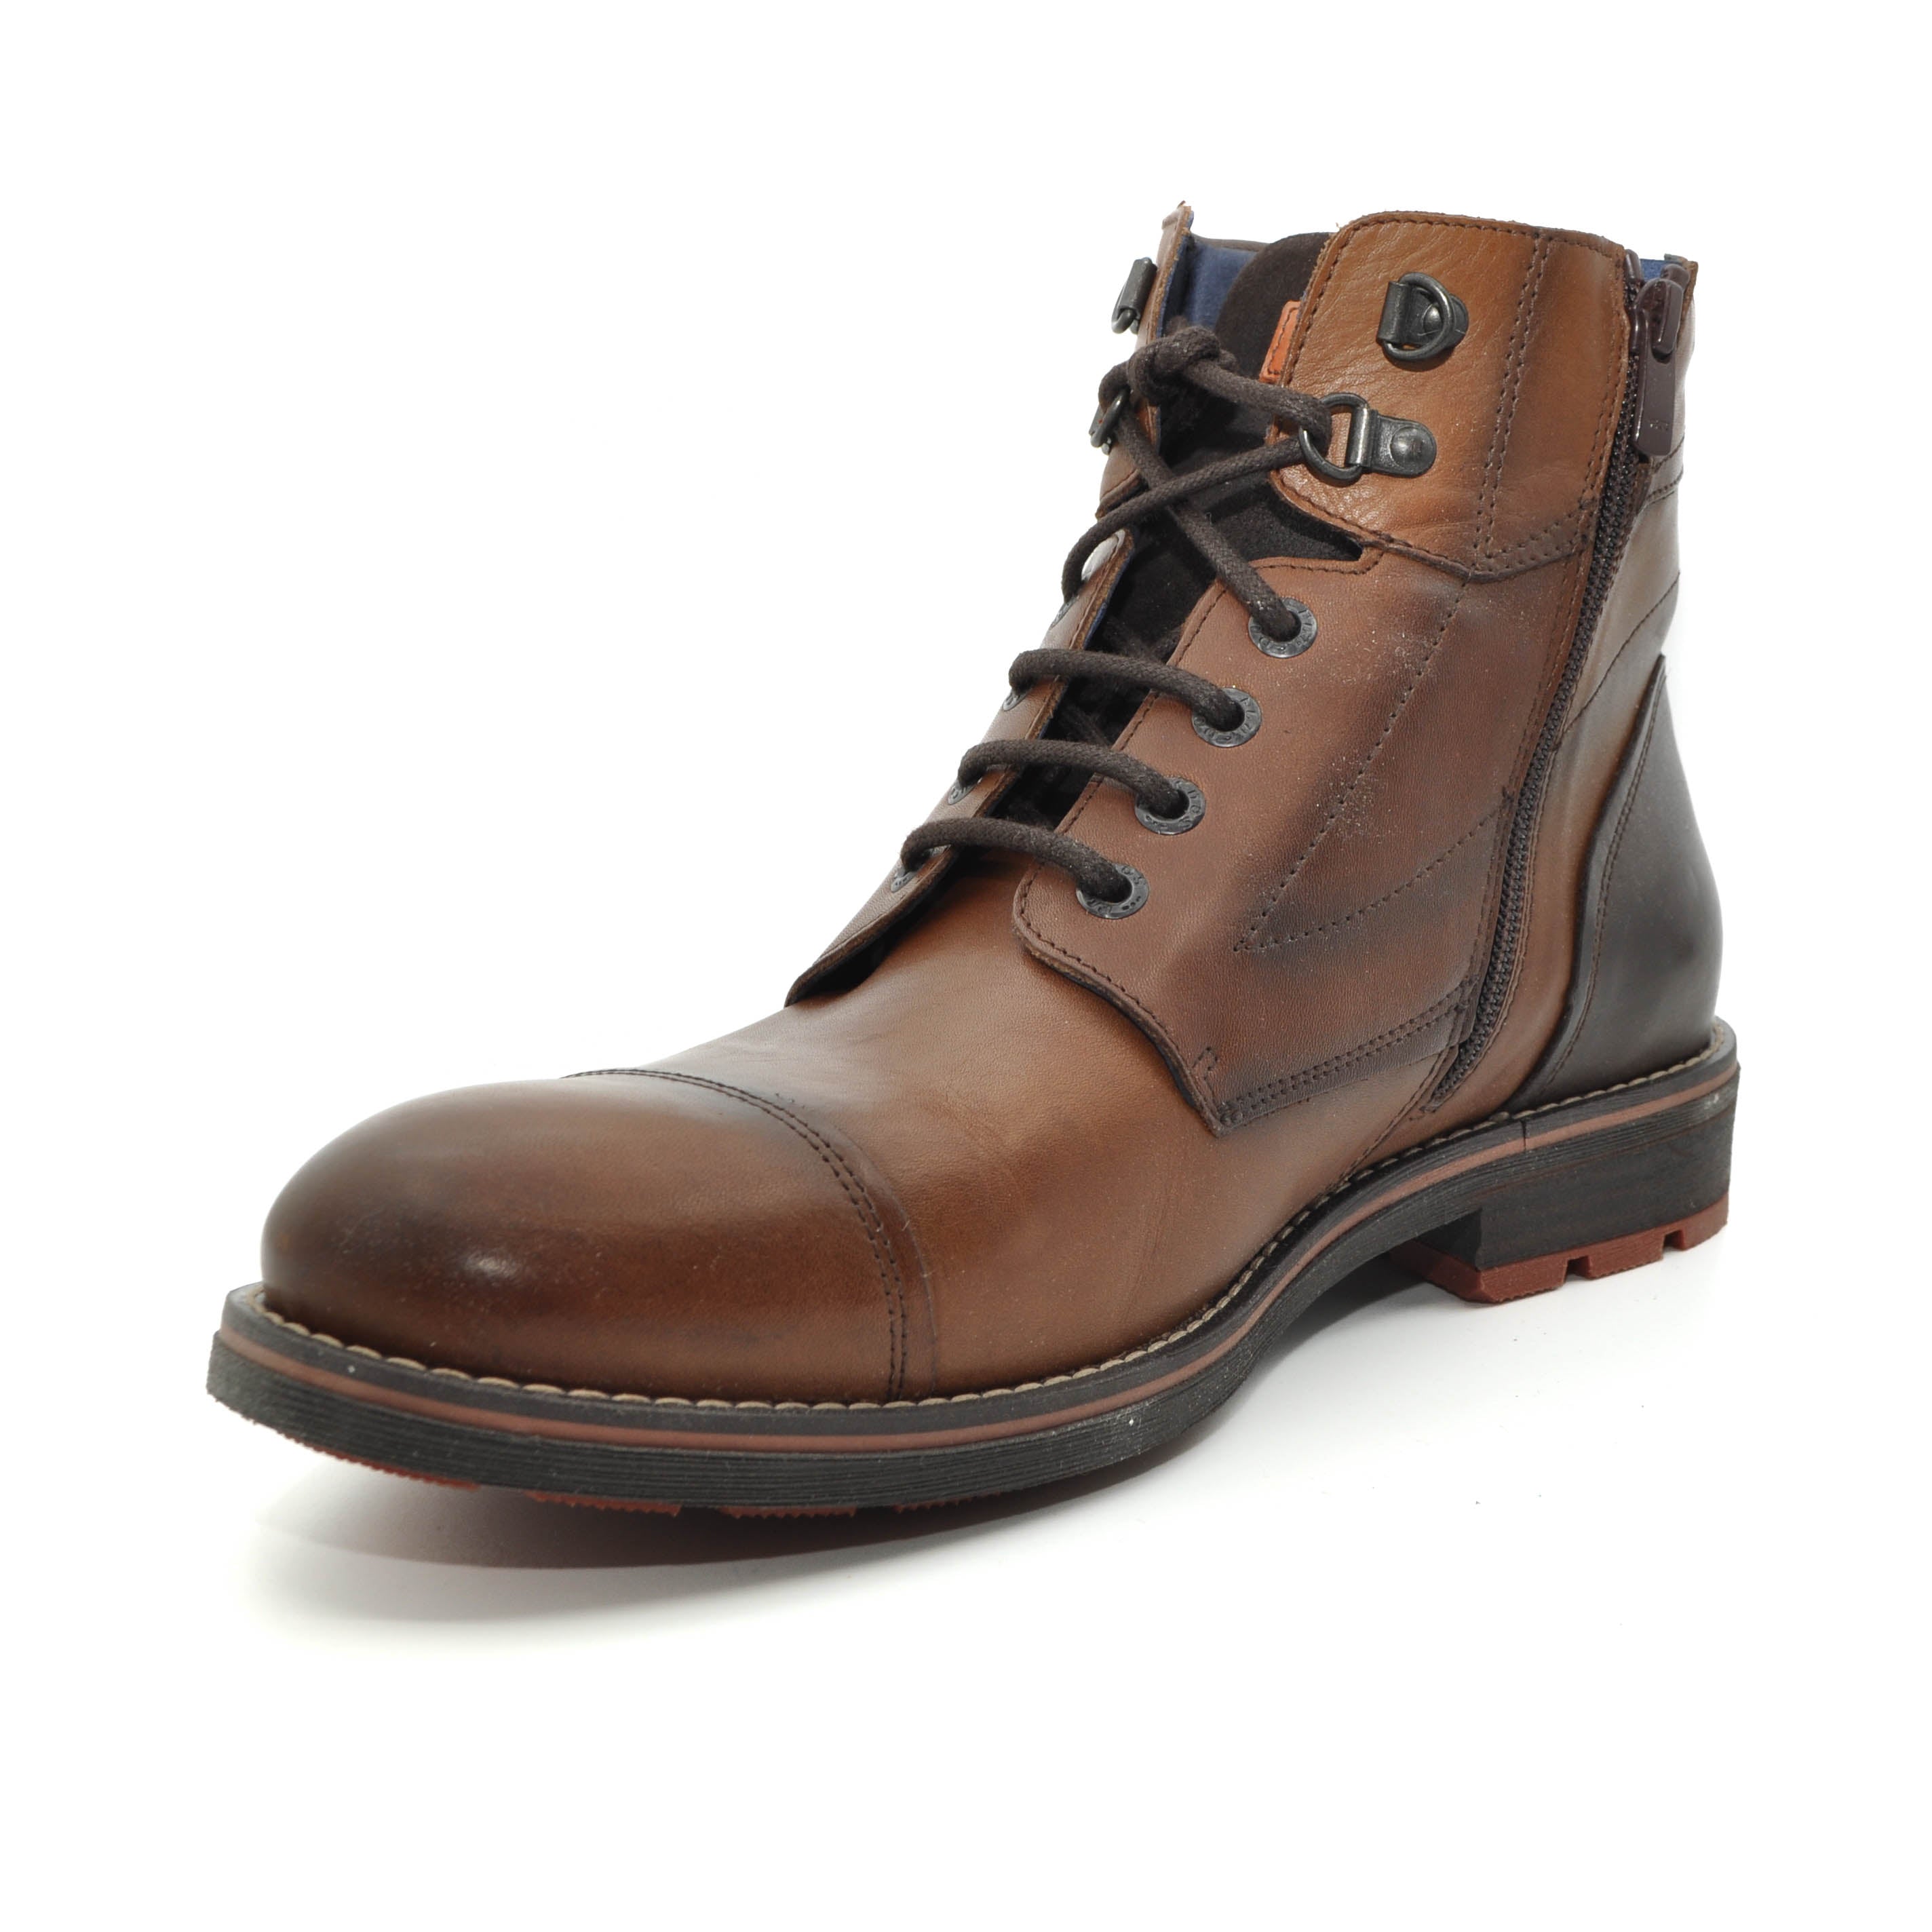 Fluchos tan leather boots for men